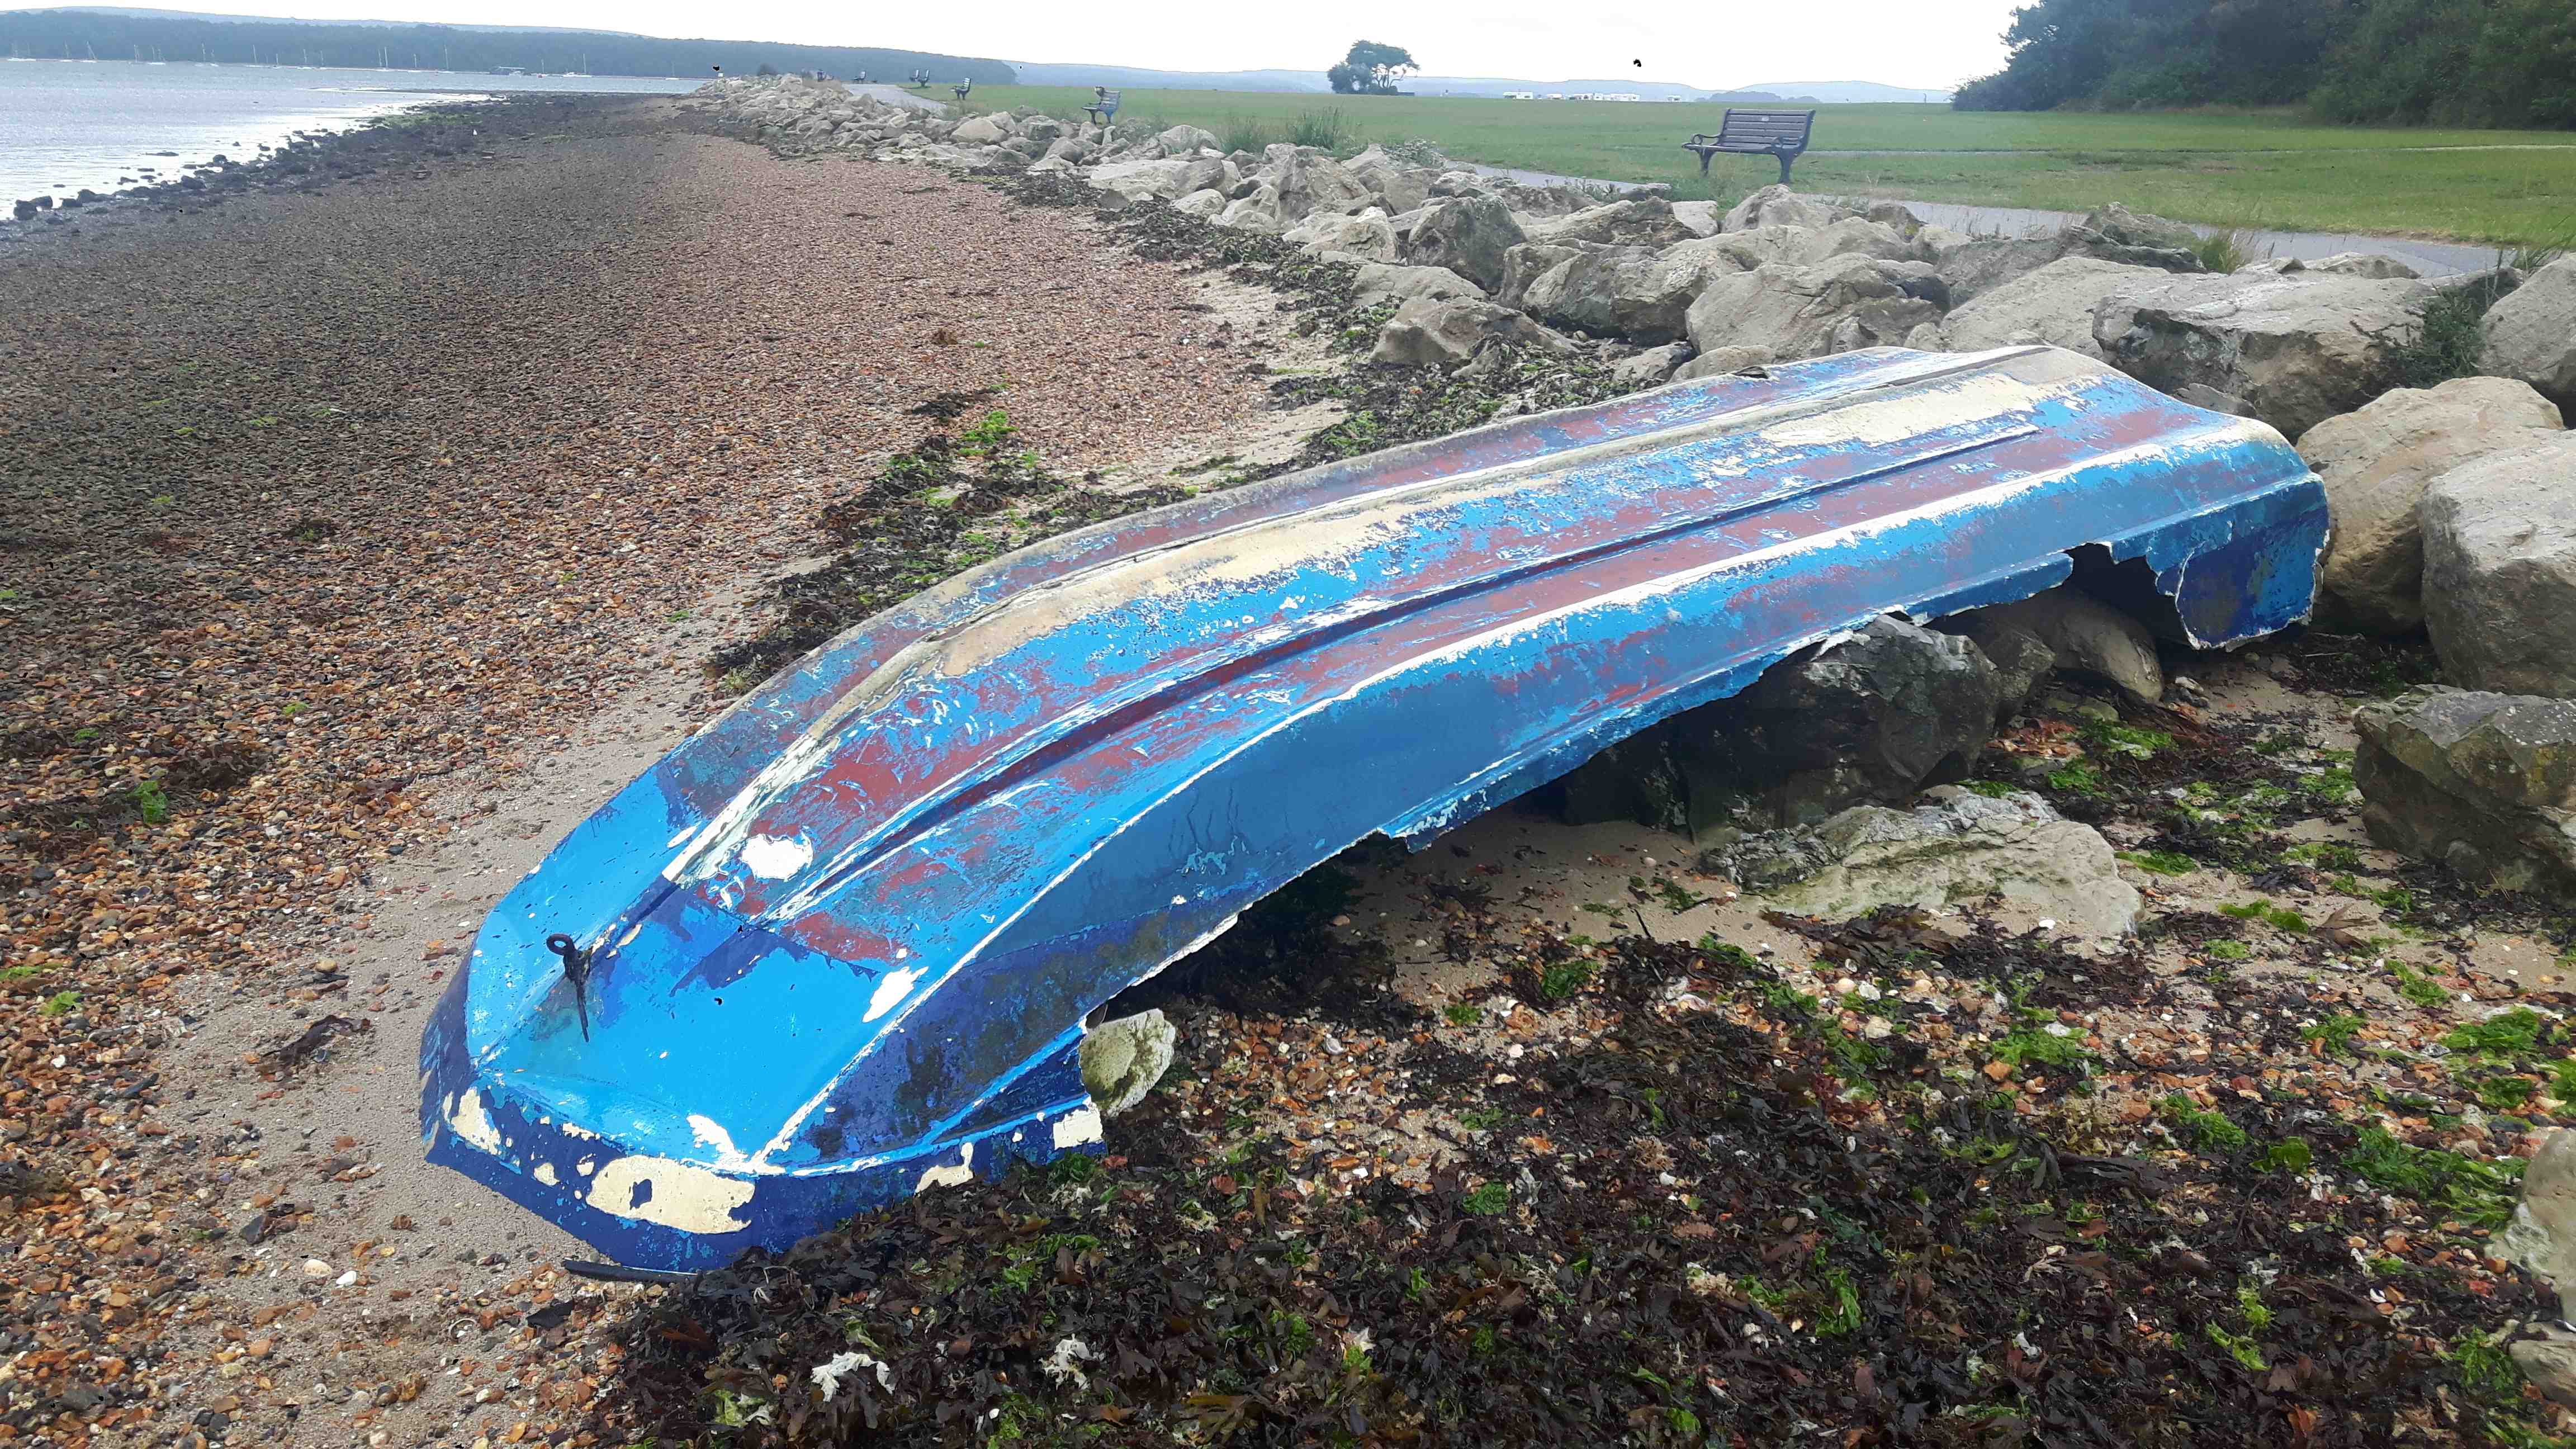 Derelict glass fibre (GRP) boat near Poole Quay, Poole Harbour, Sept 2022